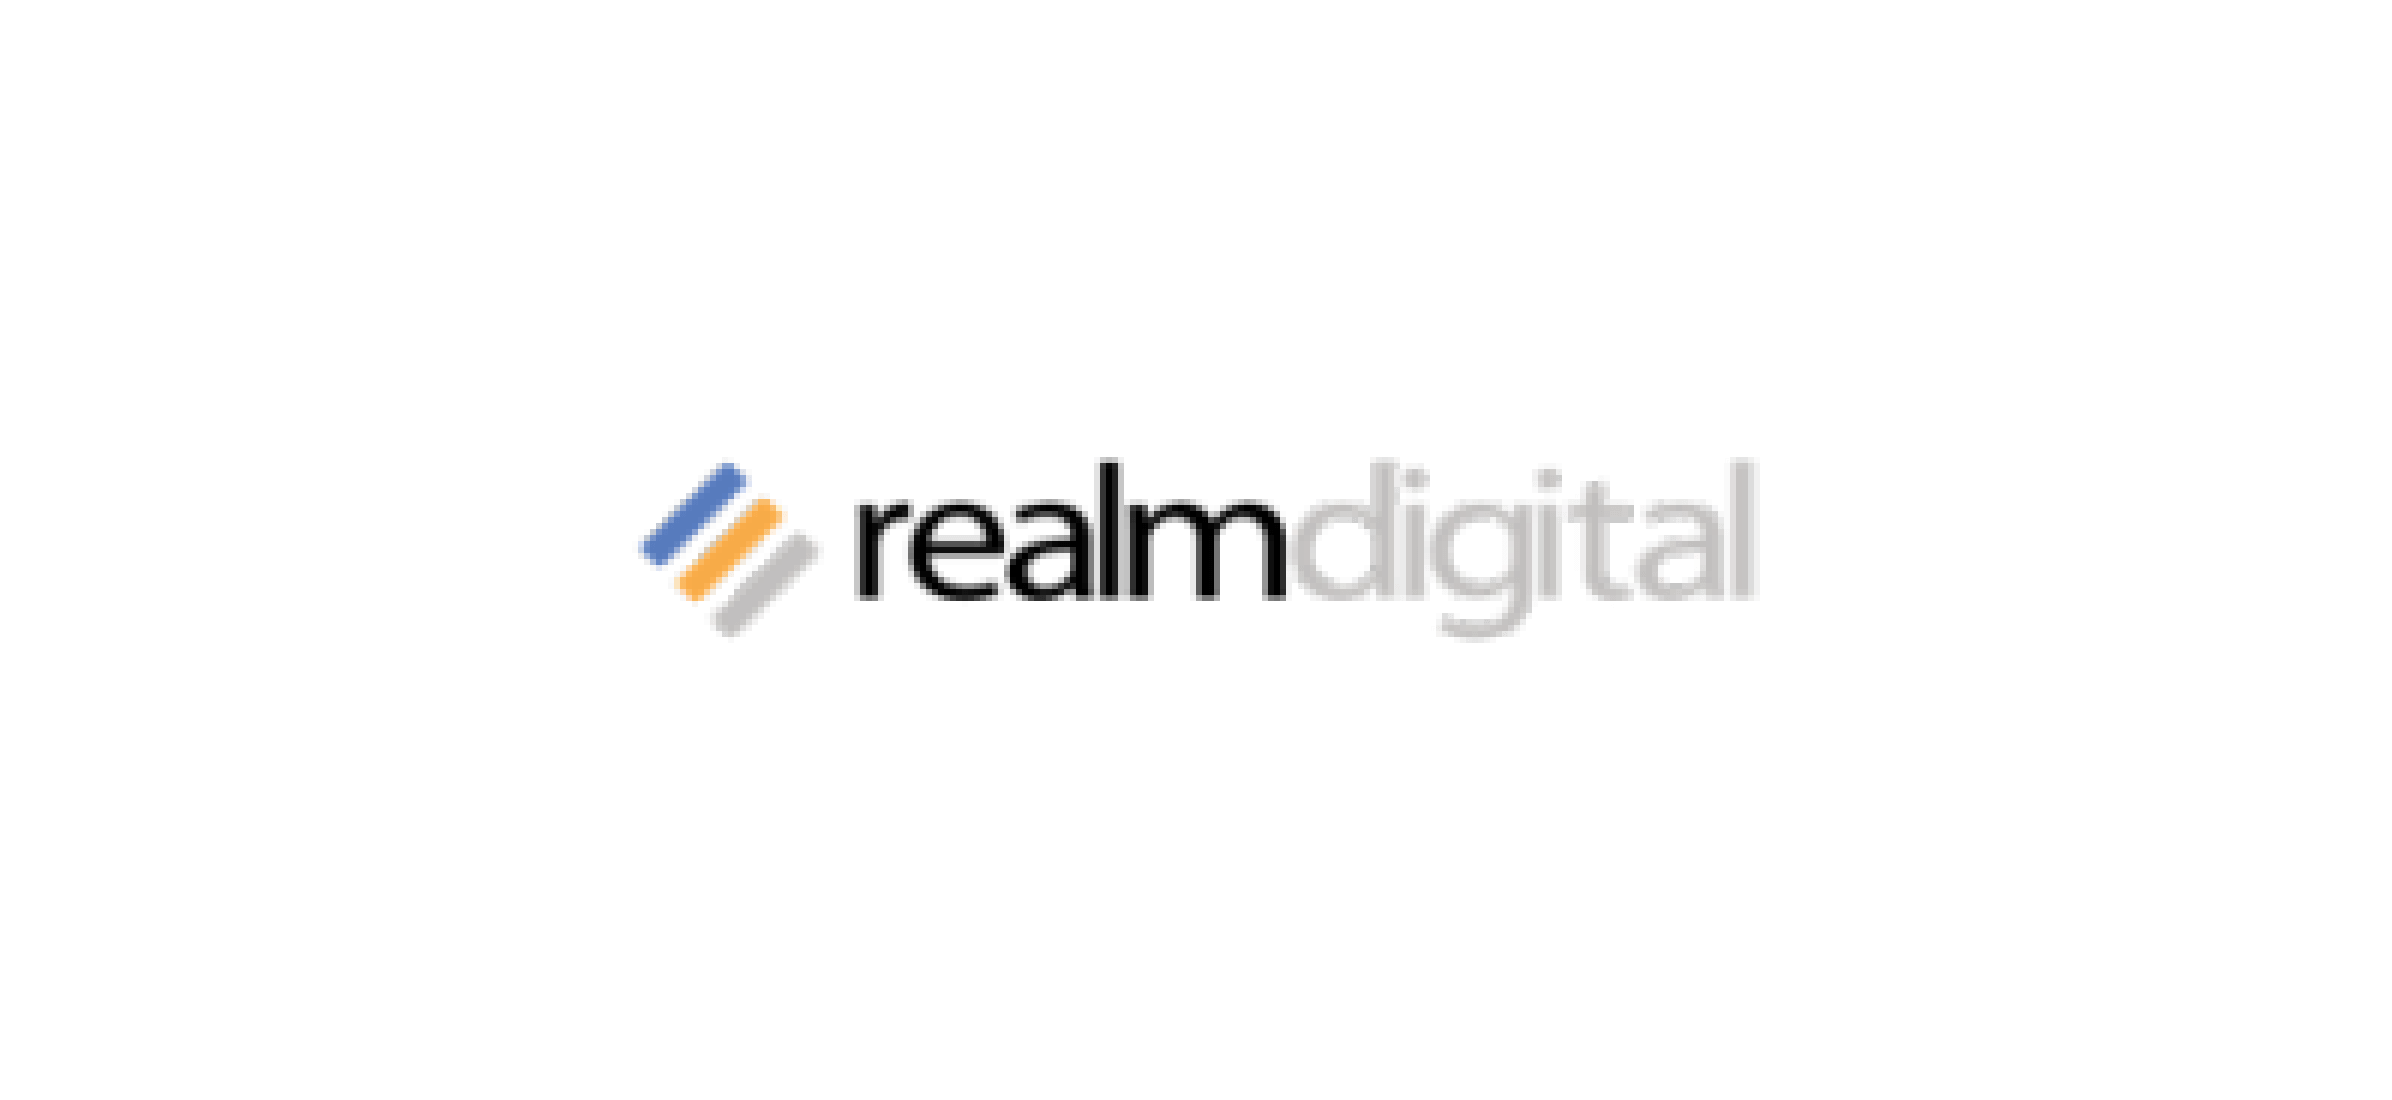 The Realm Digital logo